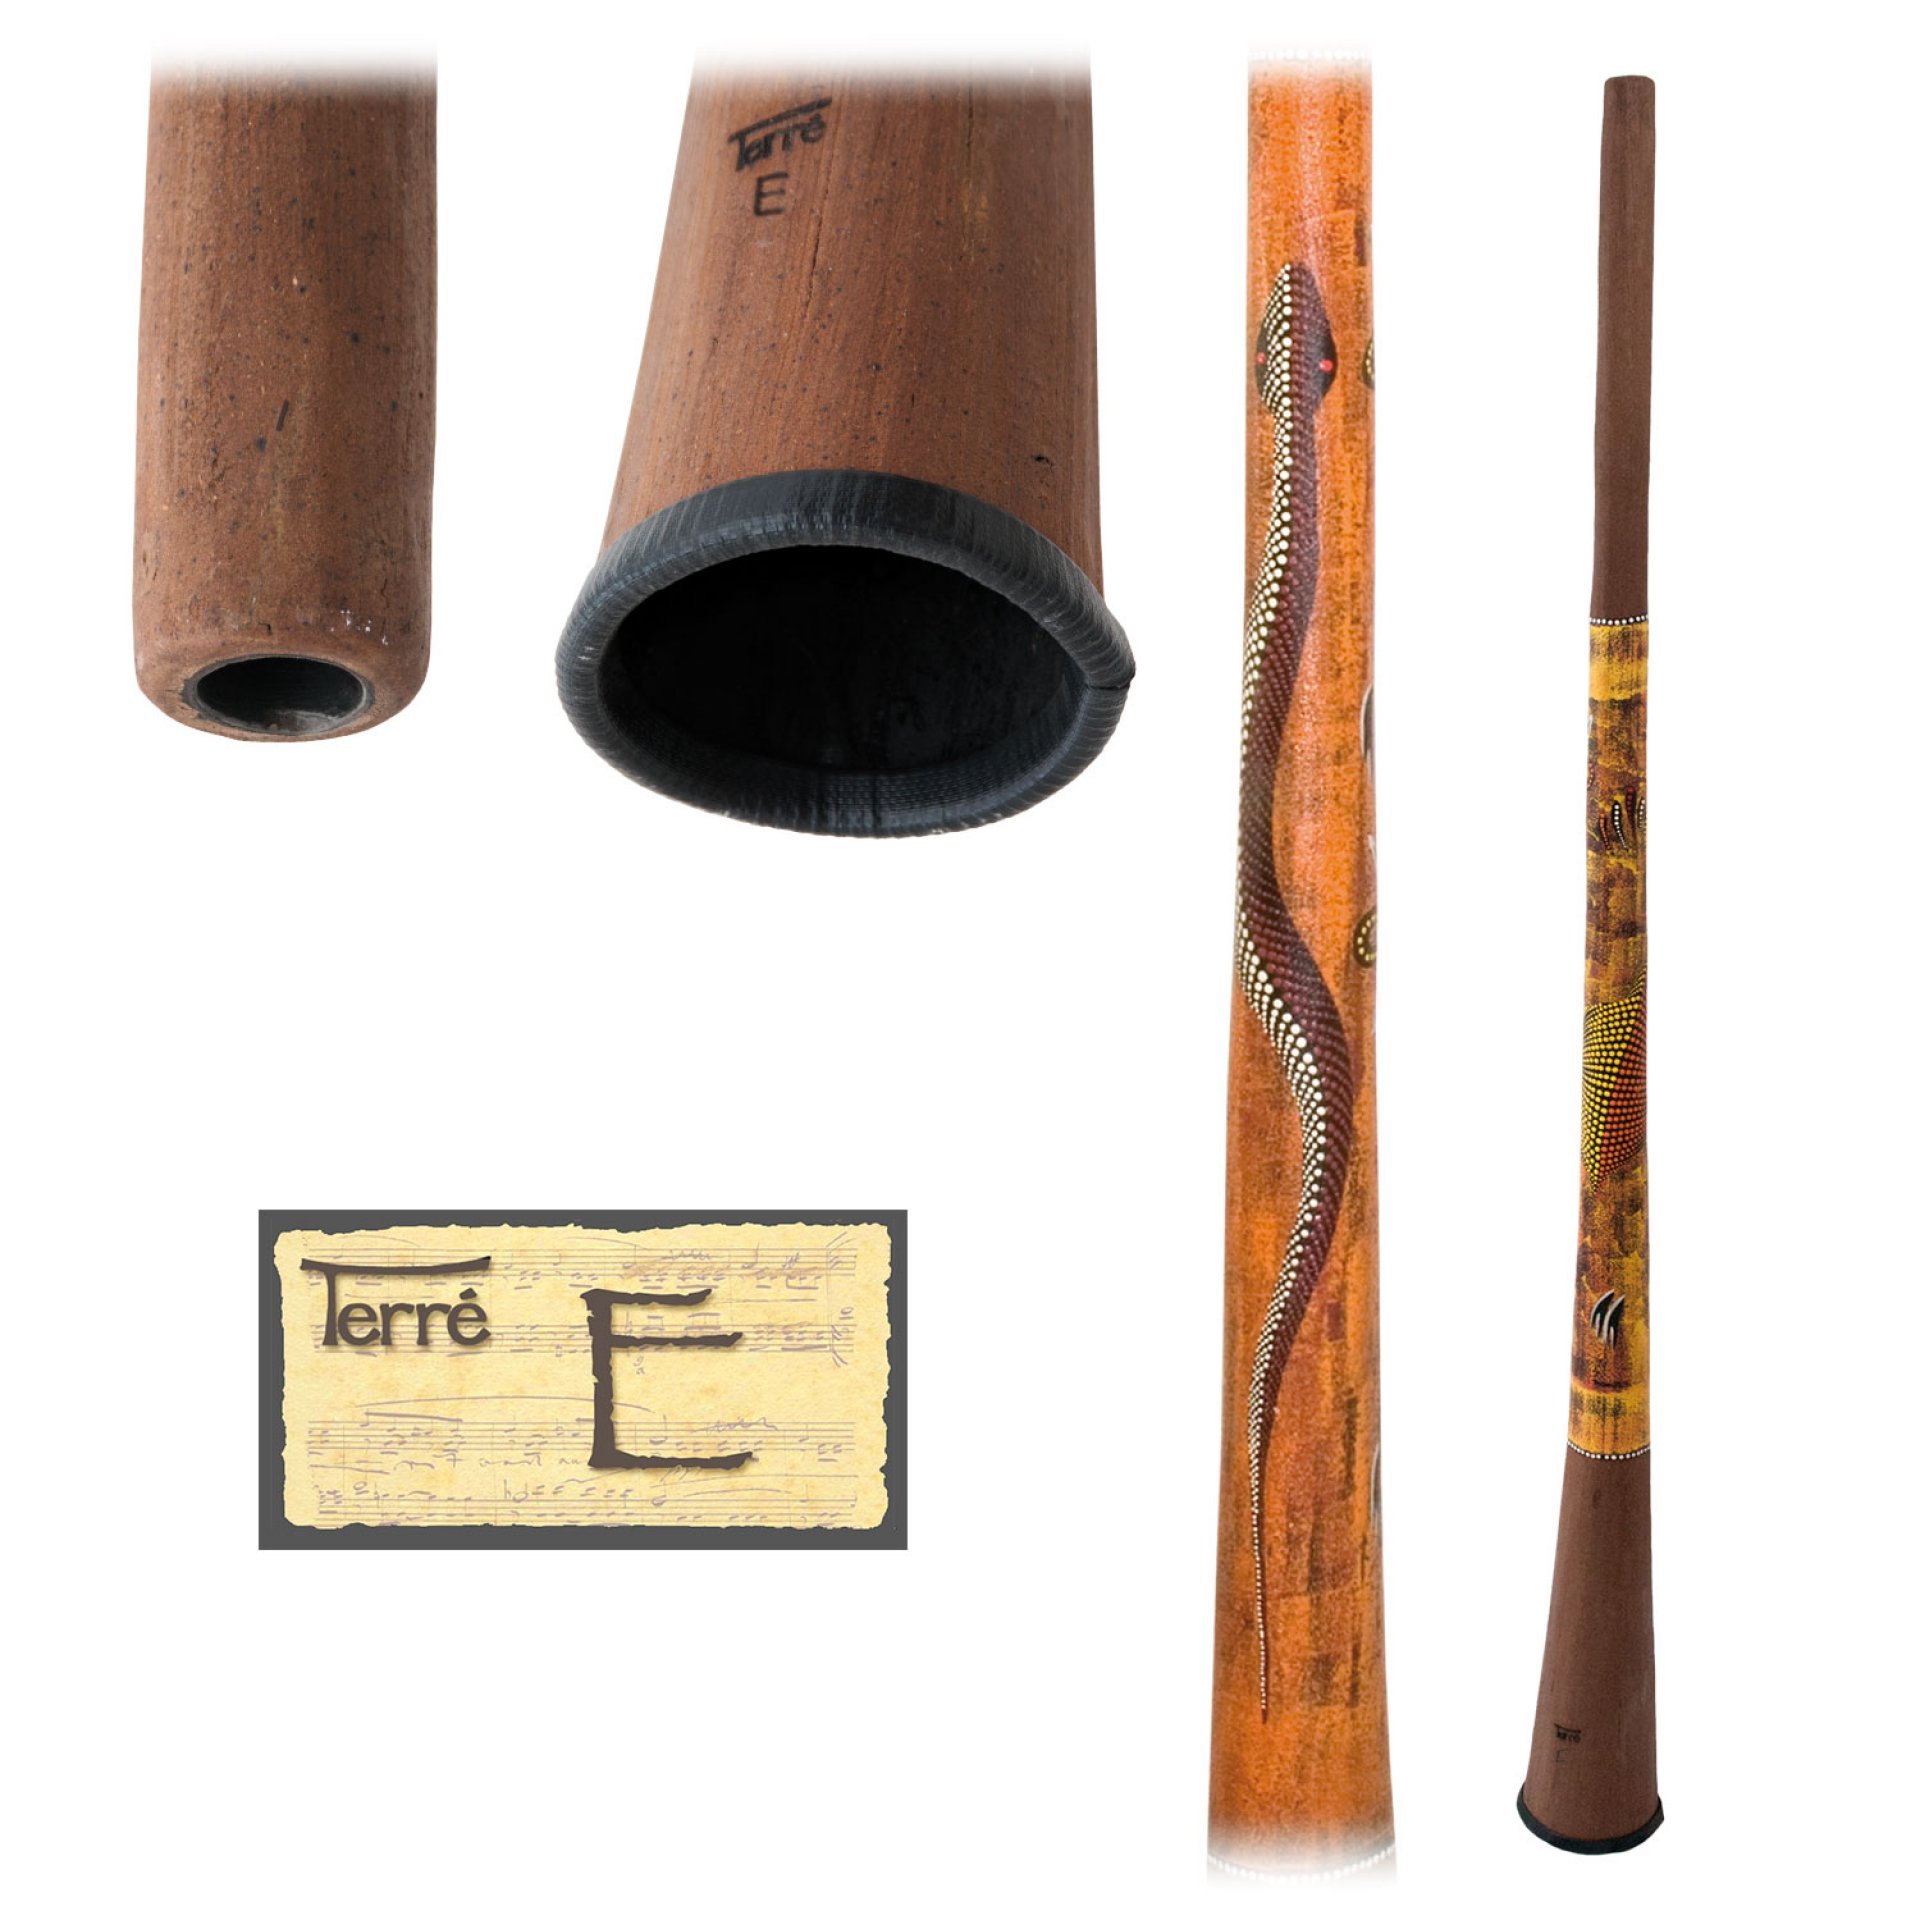 Baked wood Didgeridoo E